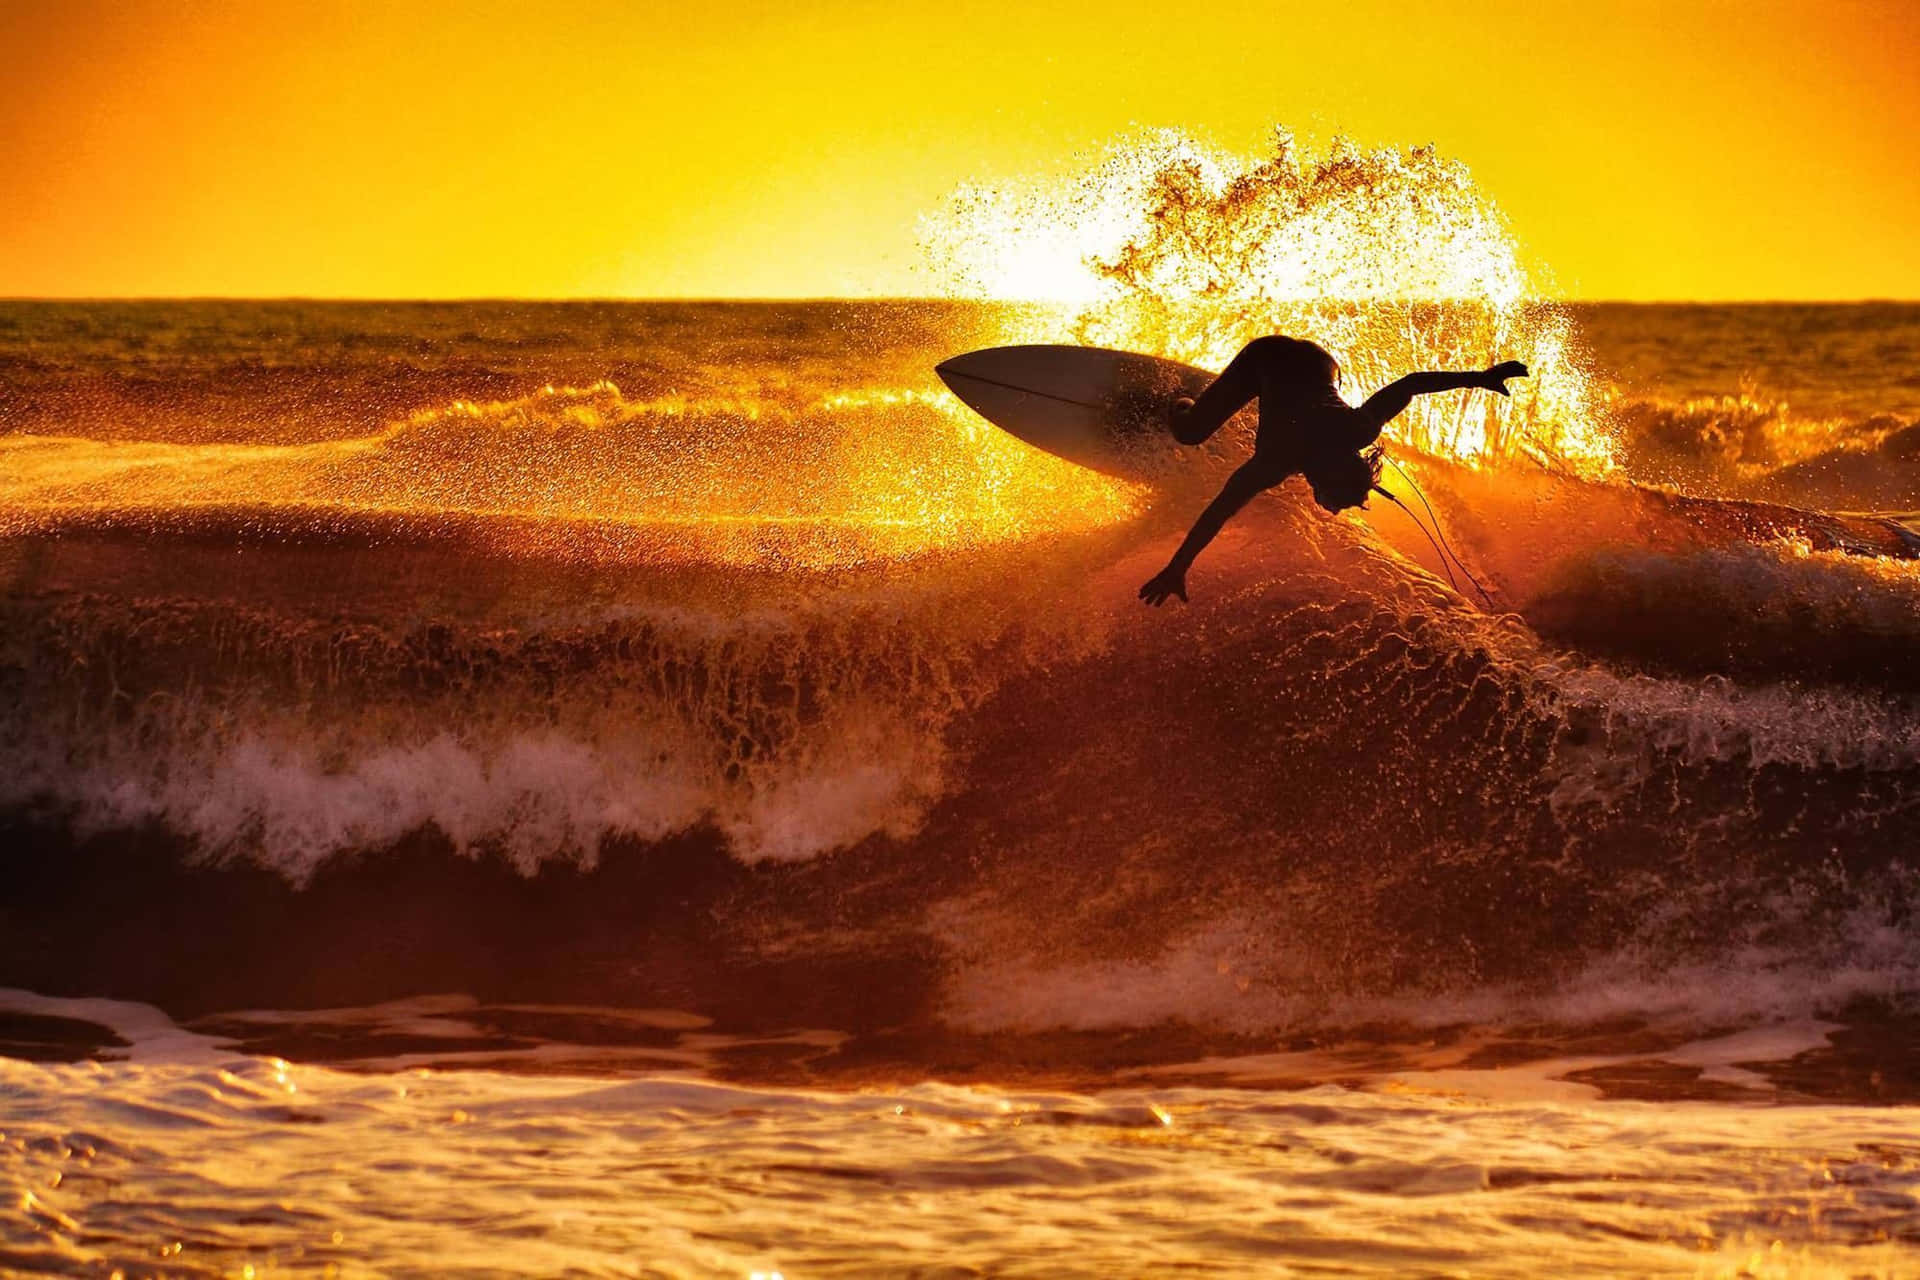 Imagende Un Surfista Realizando Un Impresionante Movimiento En Una Playa Al Atardecer.